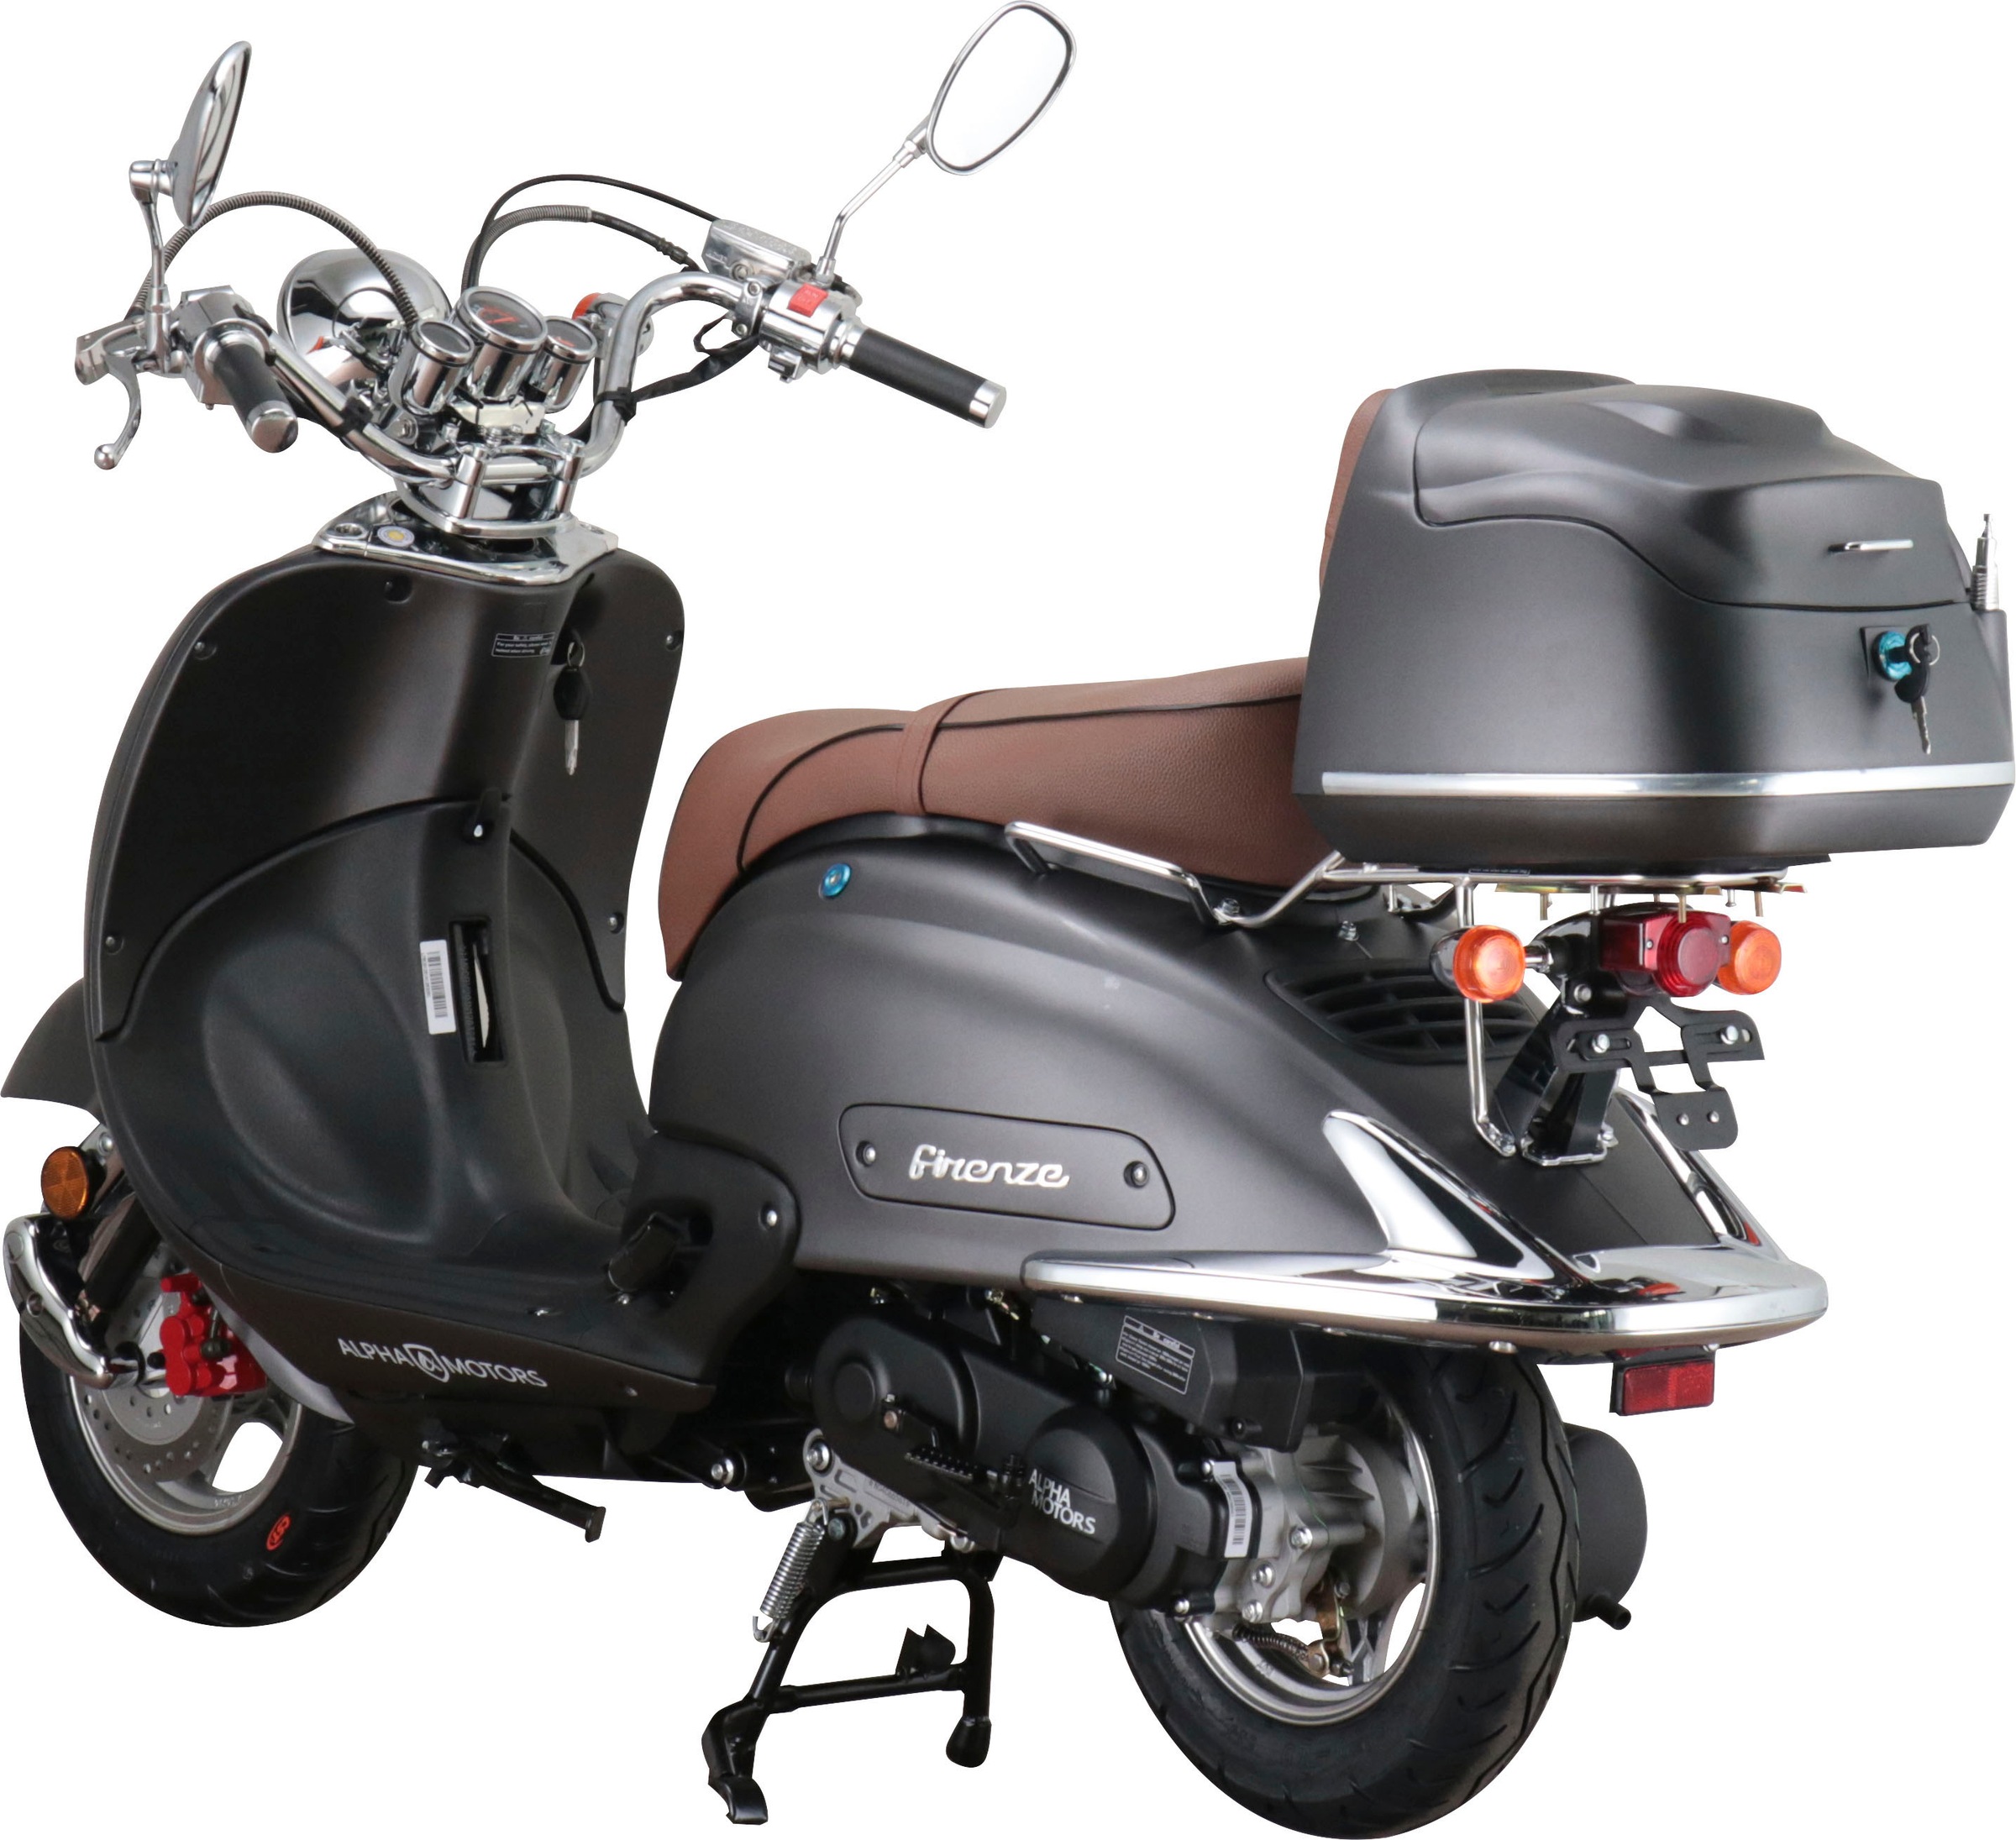 Alpha Motors Motorroller »Retro Firenze«, 50 cm³, 45 km/h, Euro 5, 2,99 PS, inkl. Topcase